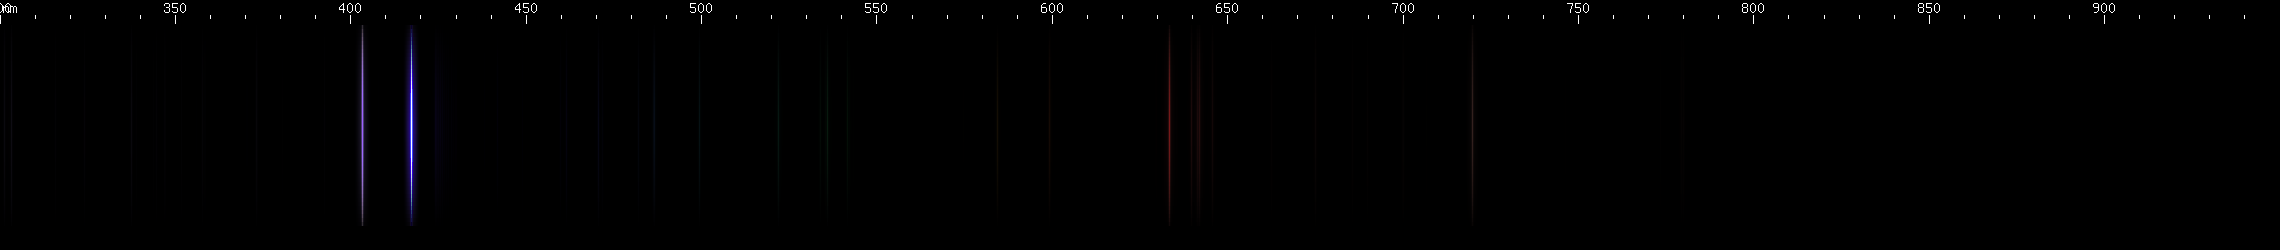 Spectral lines of Gallium.